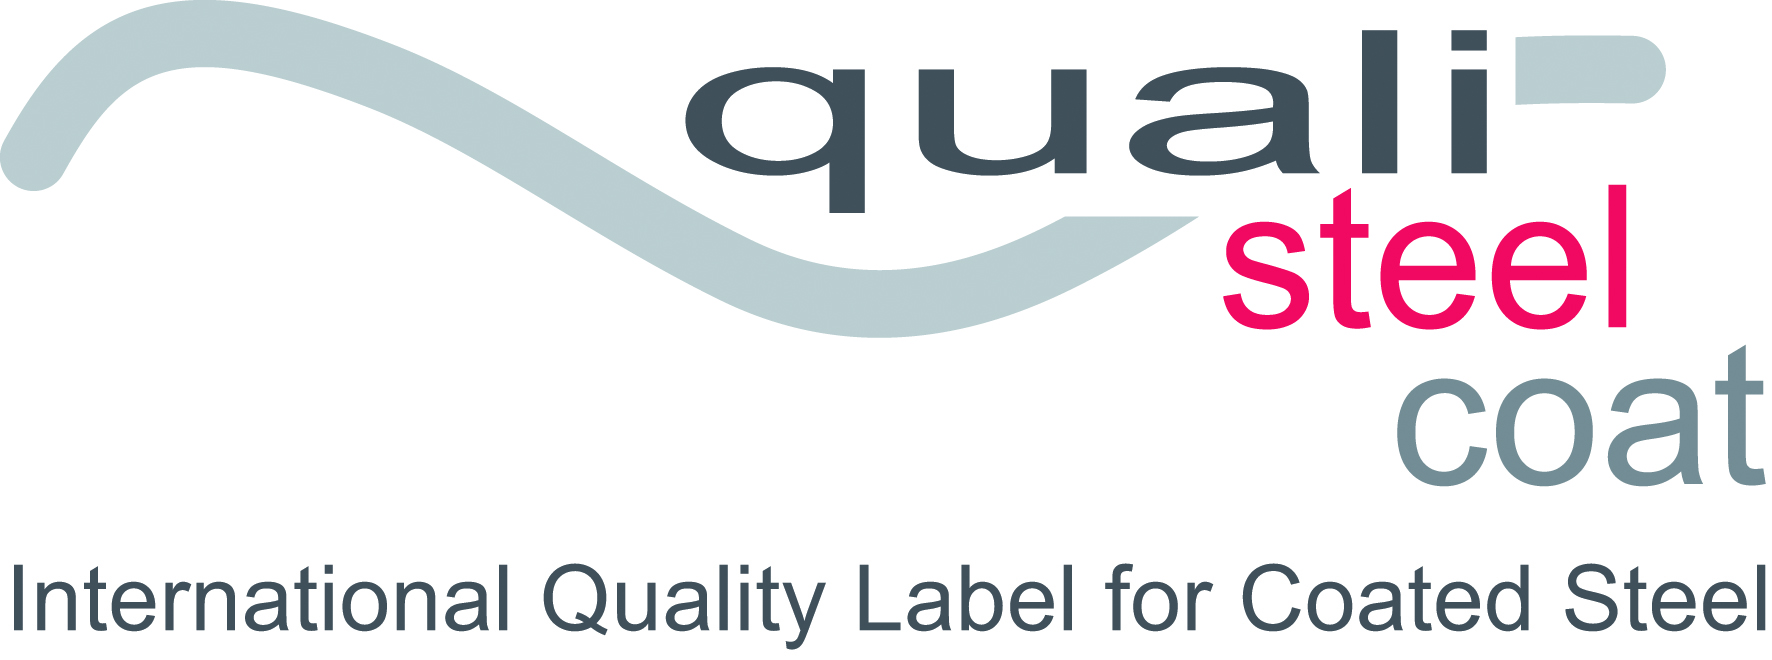 Qualisteelcoat kwaliteitslabel logo